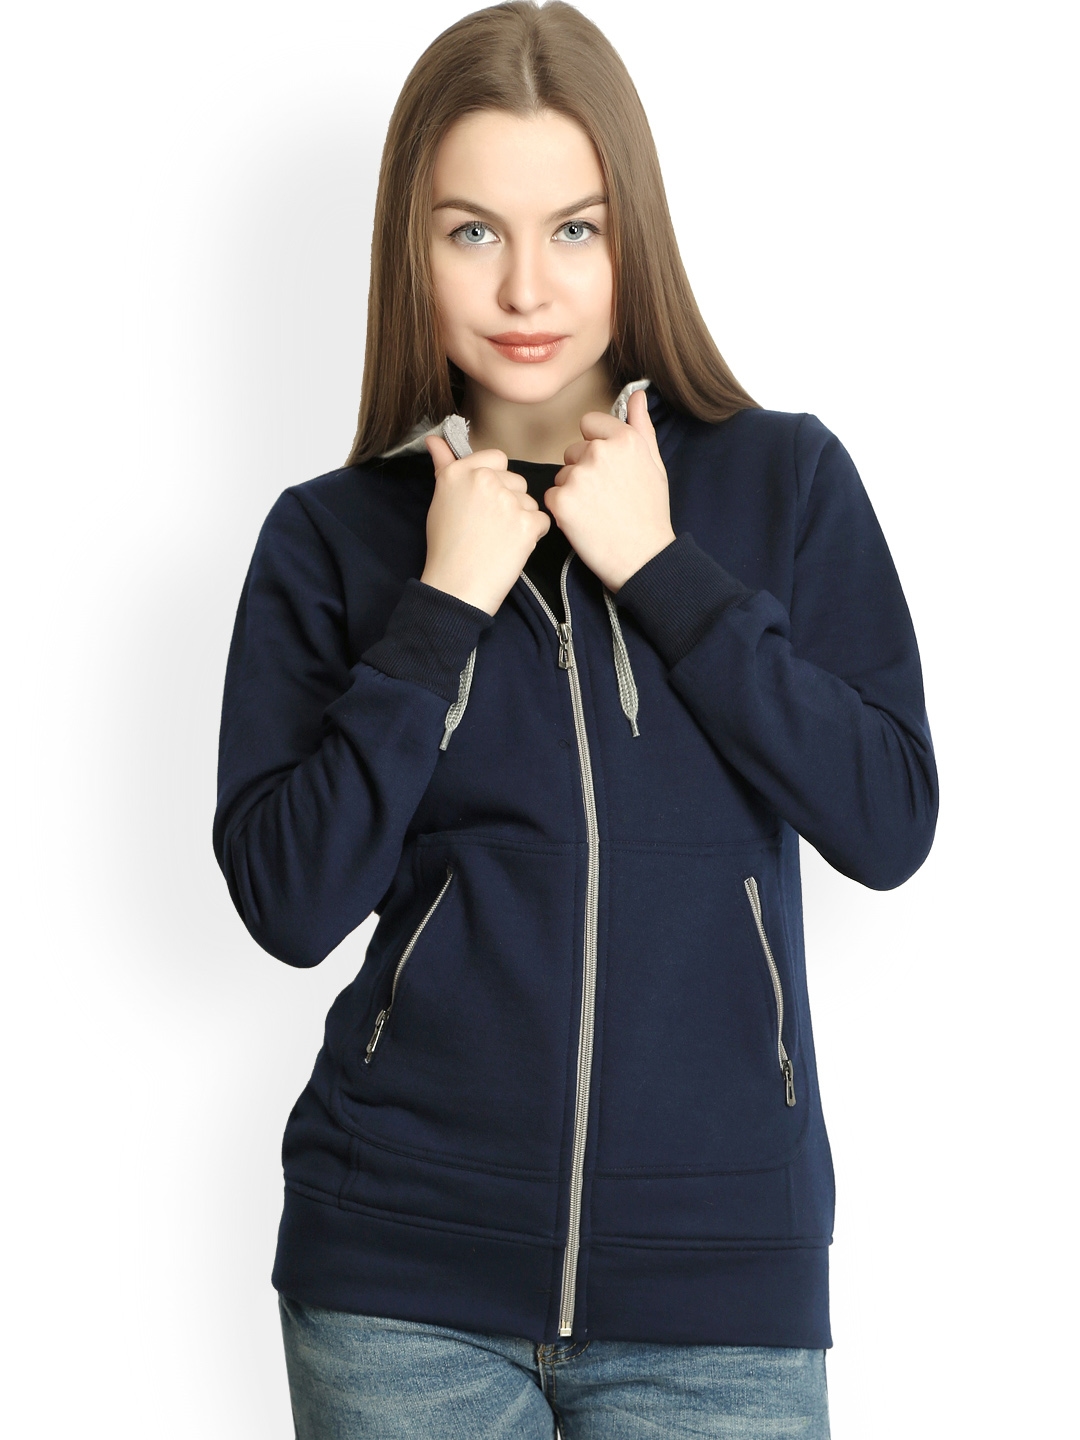 Sweatshirts for Women - Buy Ladies / Women's Sweatshirts Online